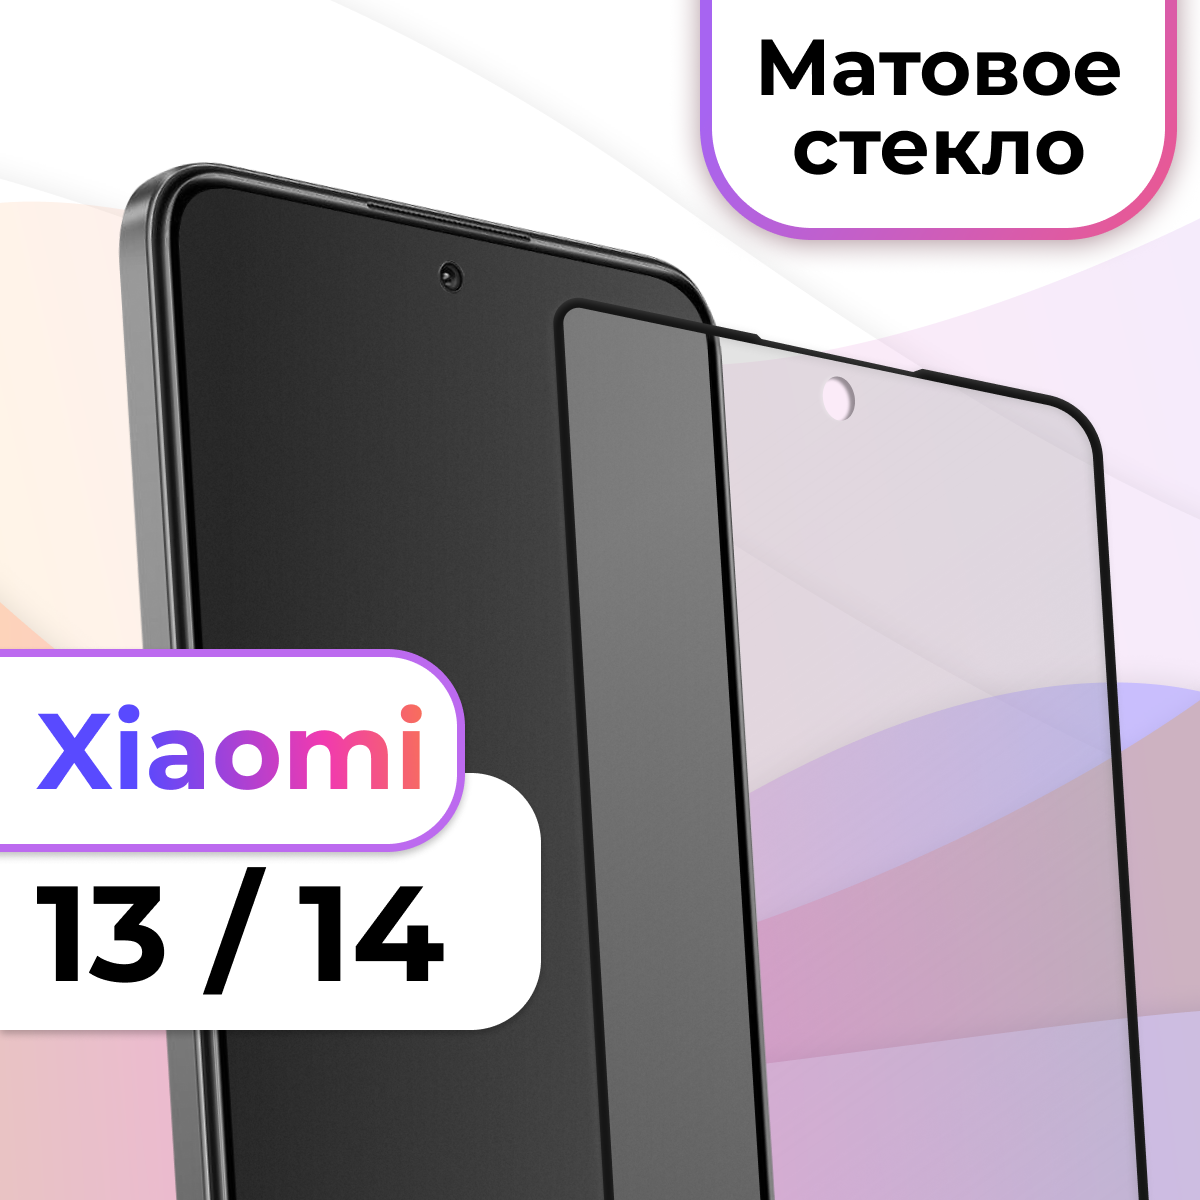 Матовое защитное стекло на телефон Xiaomi 13 и Xiaomi 14 / Противоударное стекло на весь экран для смартфона Сяоми 13 и Сяоми 14 / Закаленное бронестекло для телефона